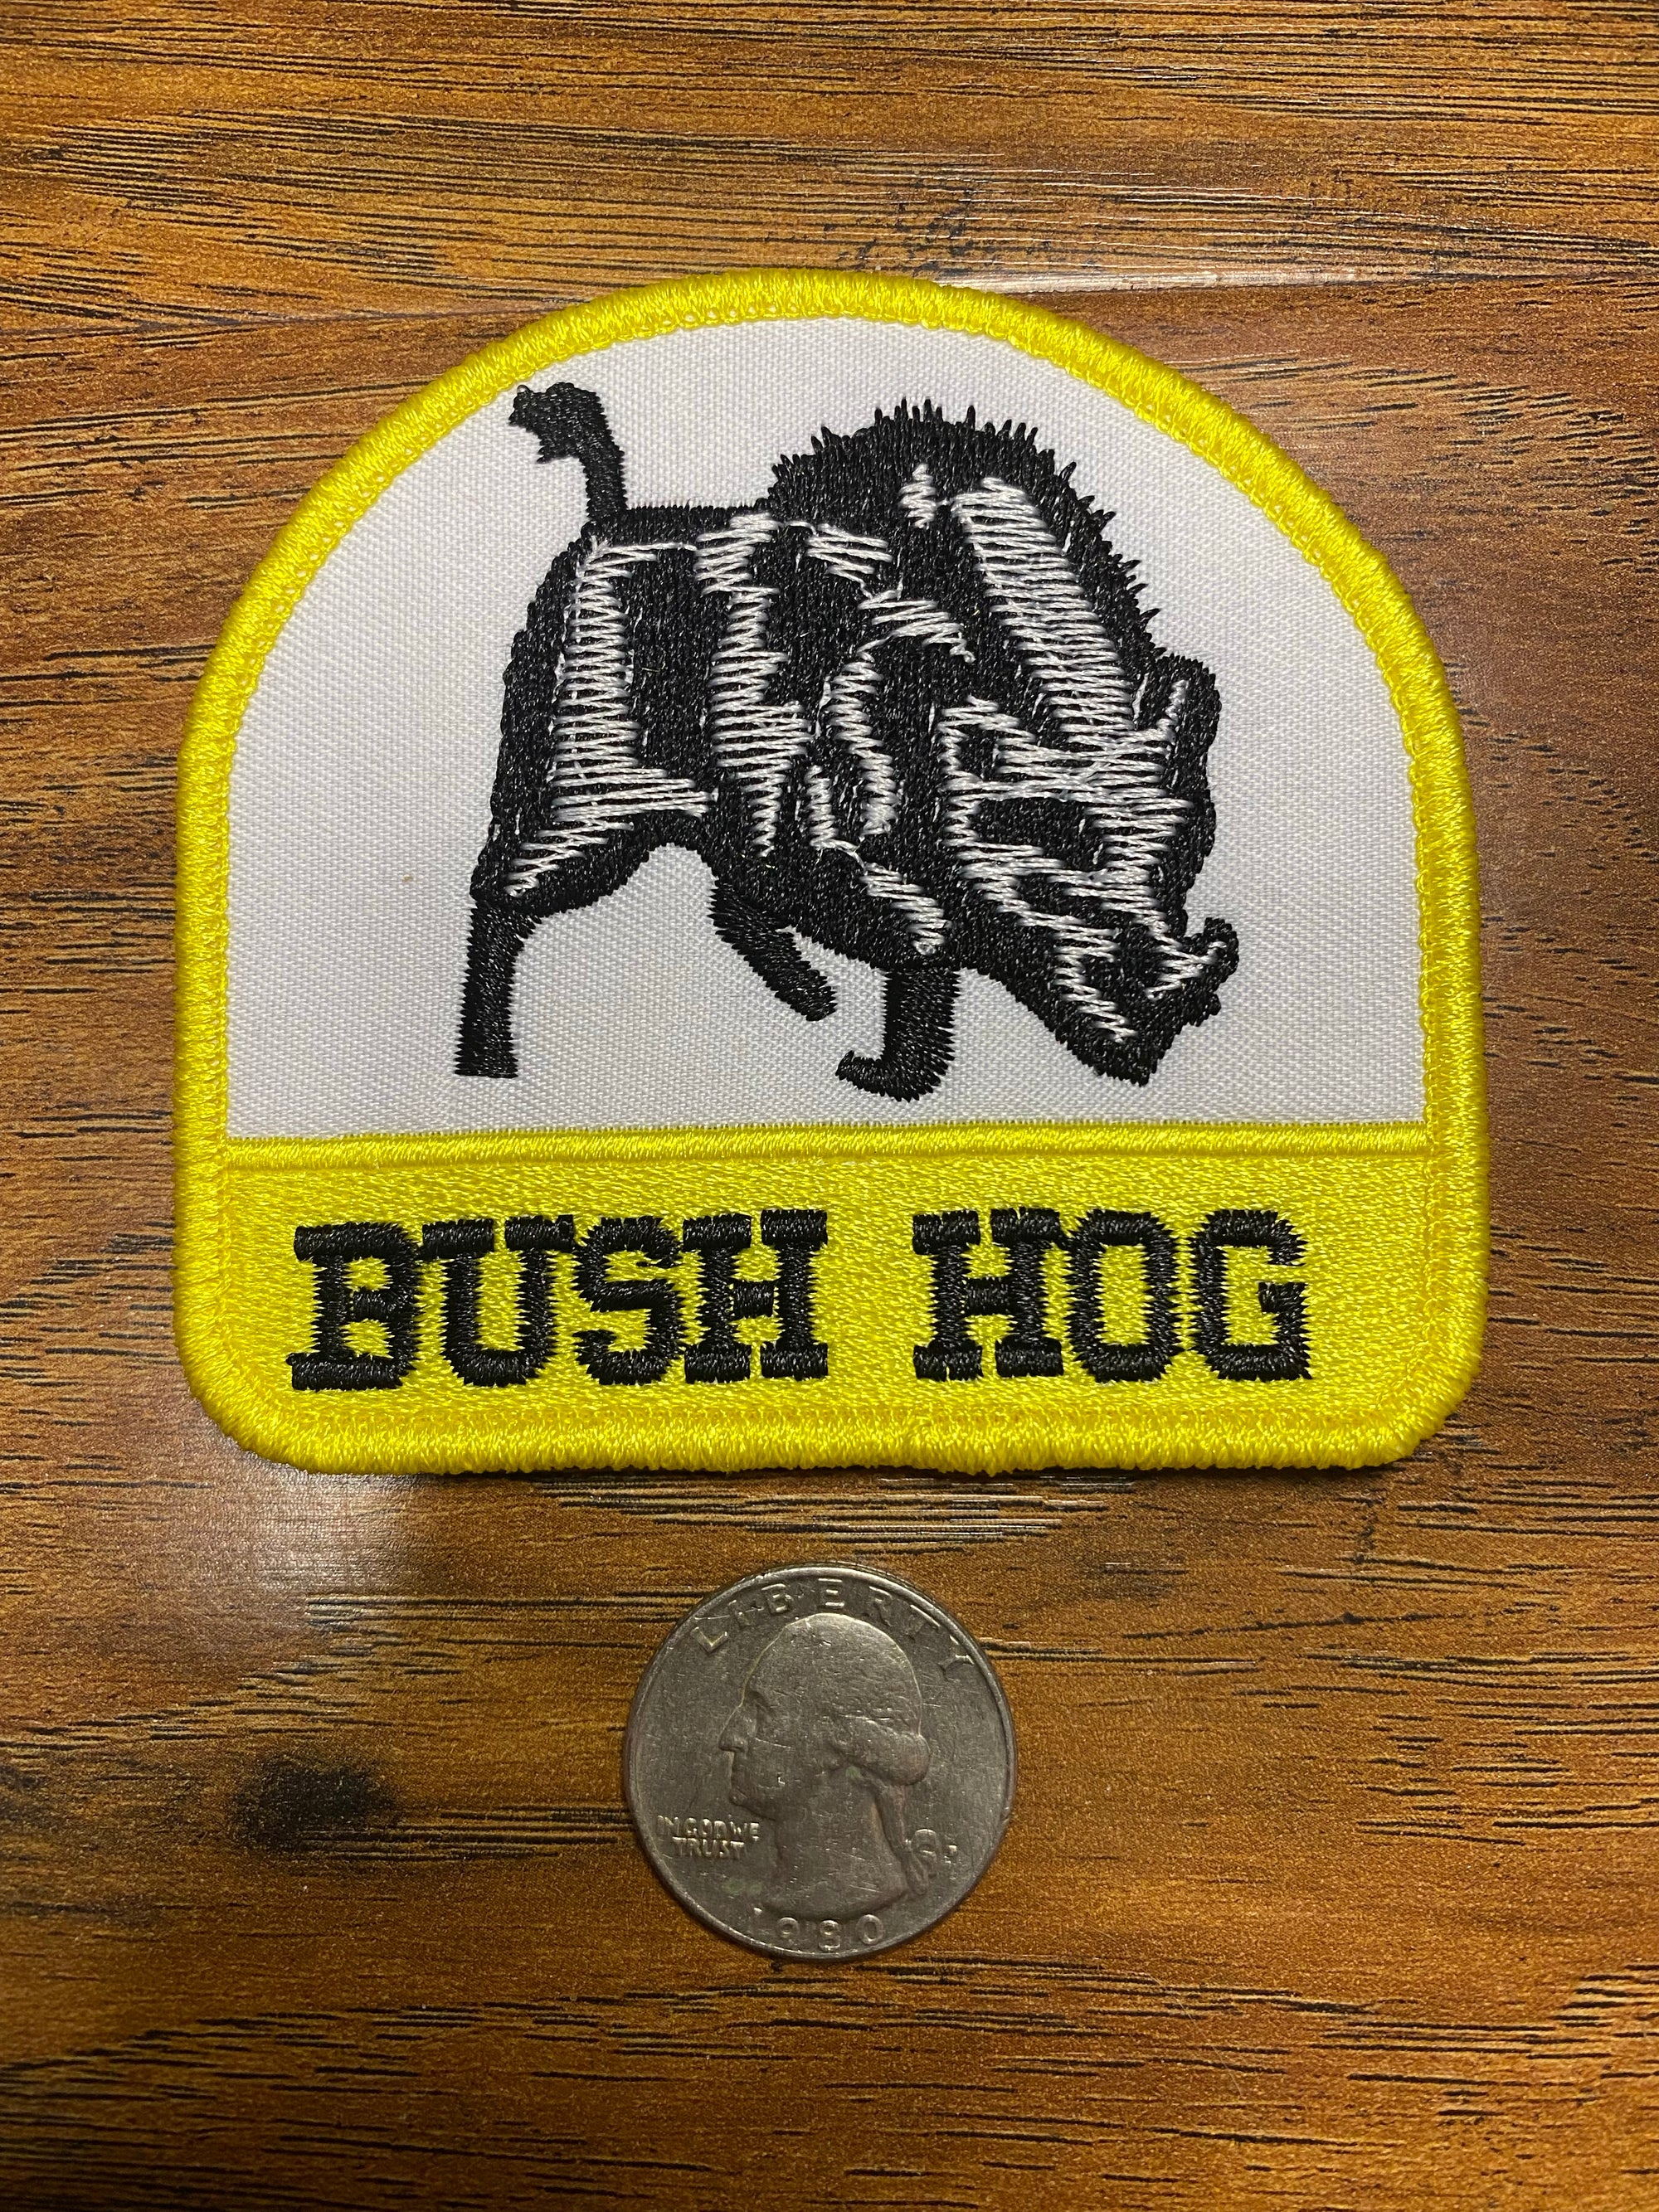 Bush hog, Animal